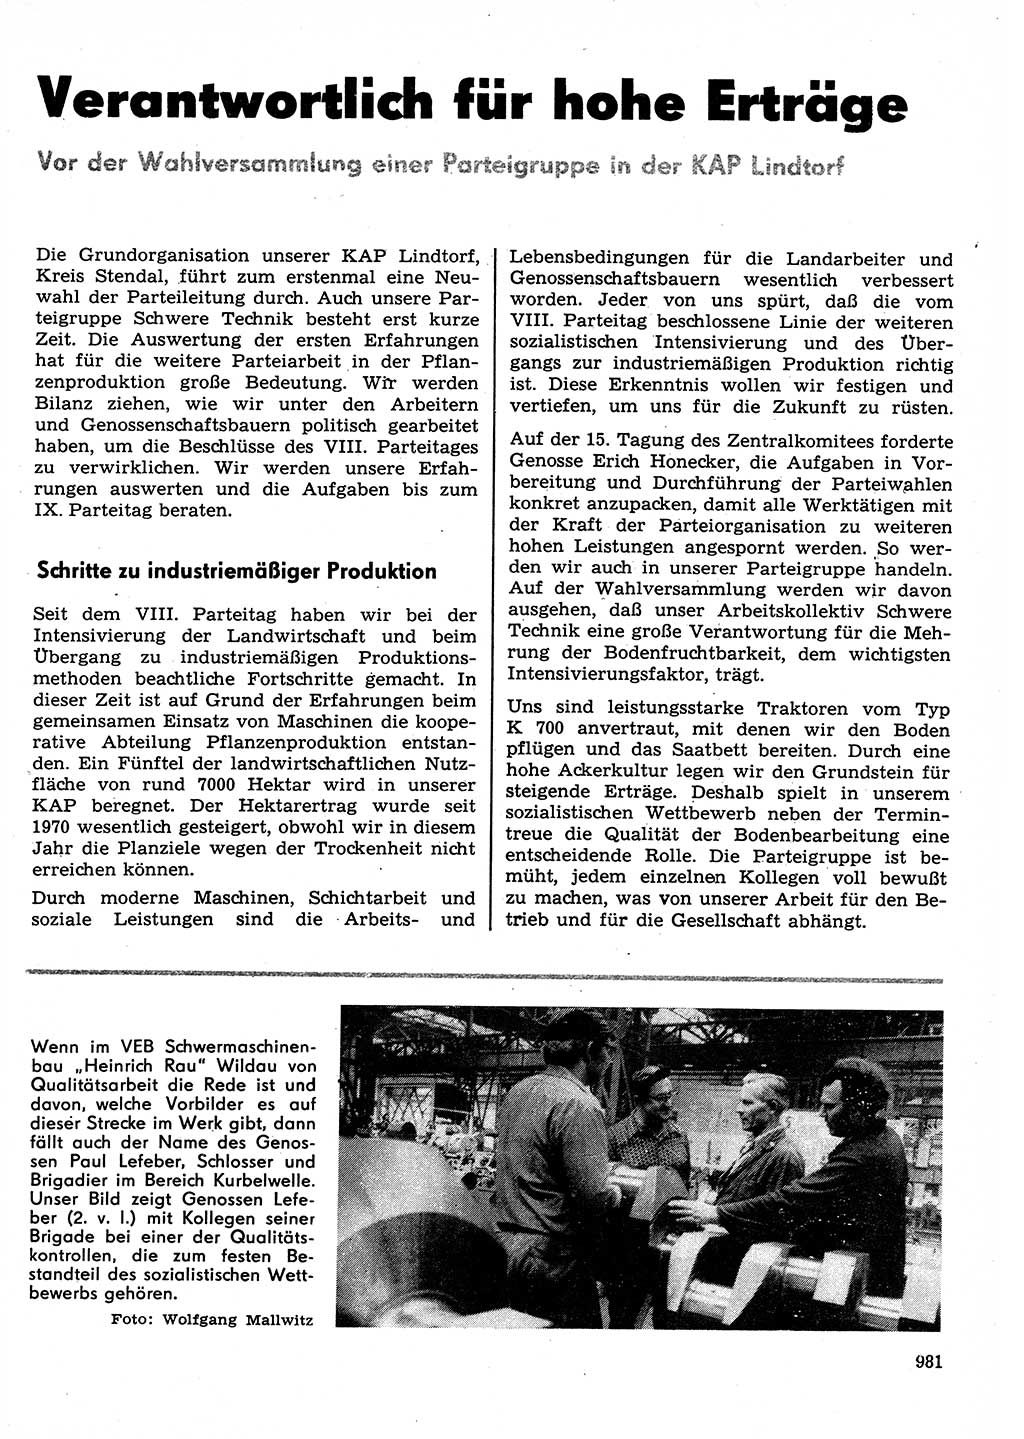 Neuer Weg (NW), Organ des Zentralkomitees (ZK) der SED (Sozialistische Einheitspartei Deutschlands) für Fragen des Parteilebens, 30. Jahrgang [Deutsche Demokratische Republik (DDR)] 1975, Seite 981 (NW ZK SED DDR 1975, S. 981)